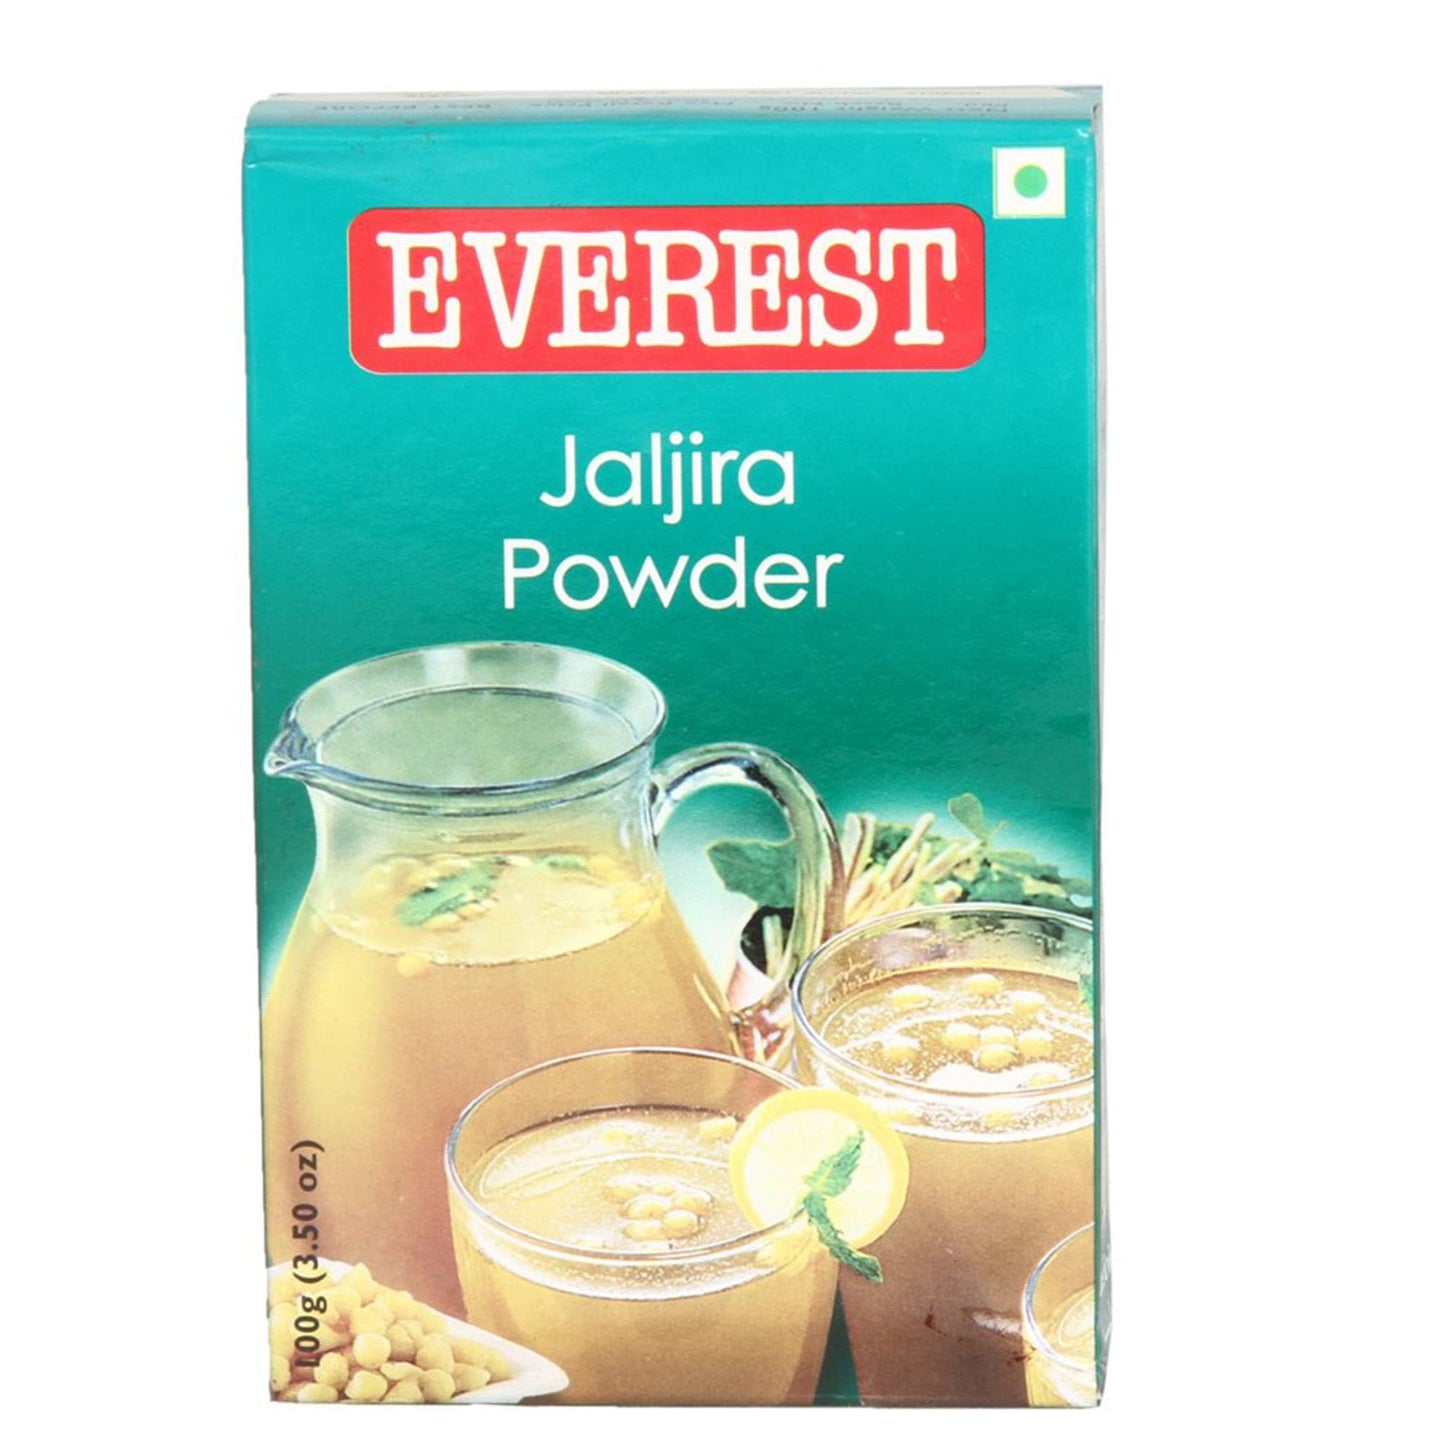 Everest Jaljira Powder (7047392559291)